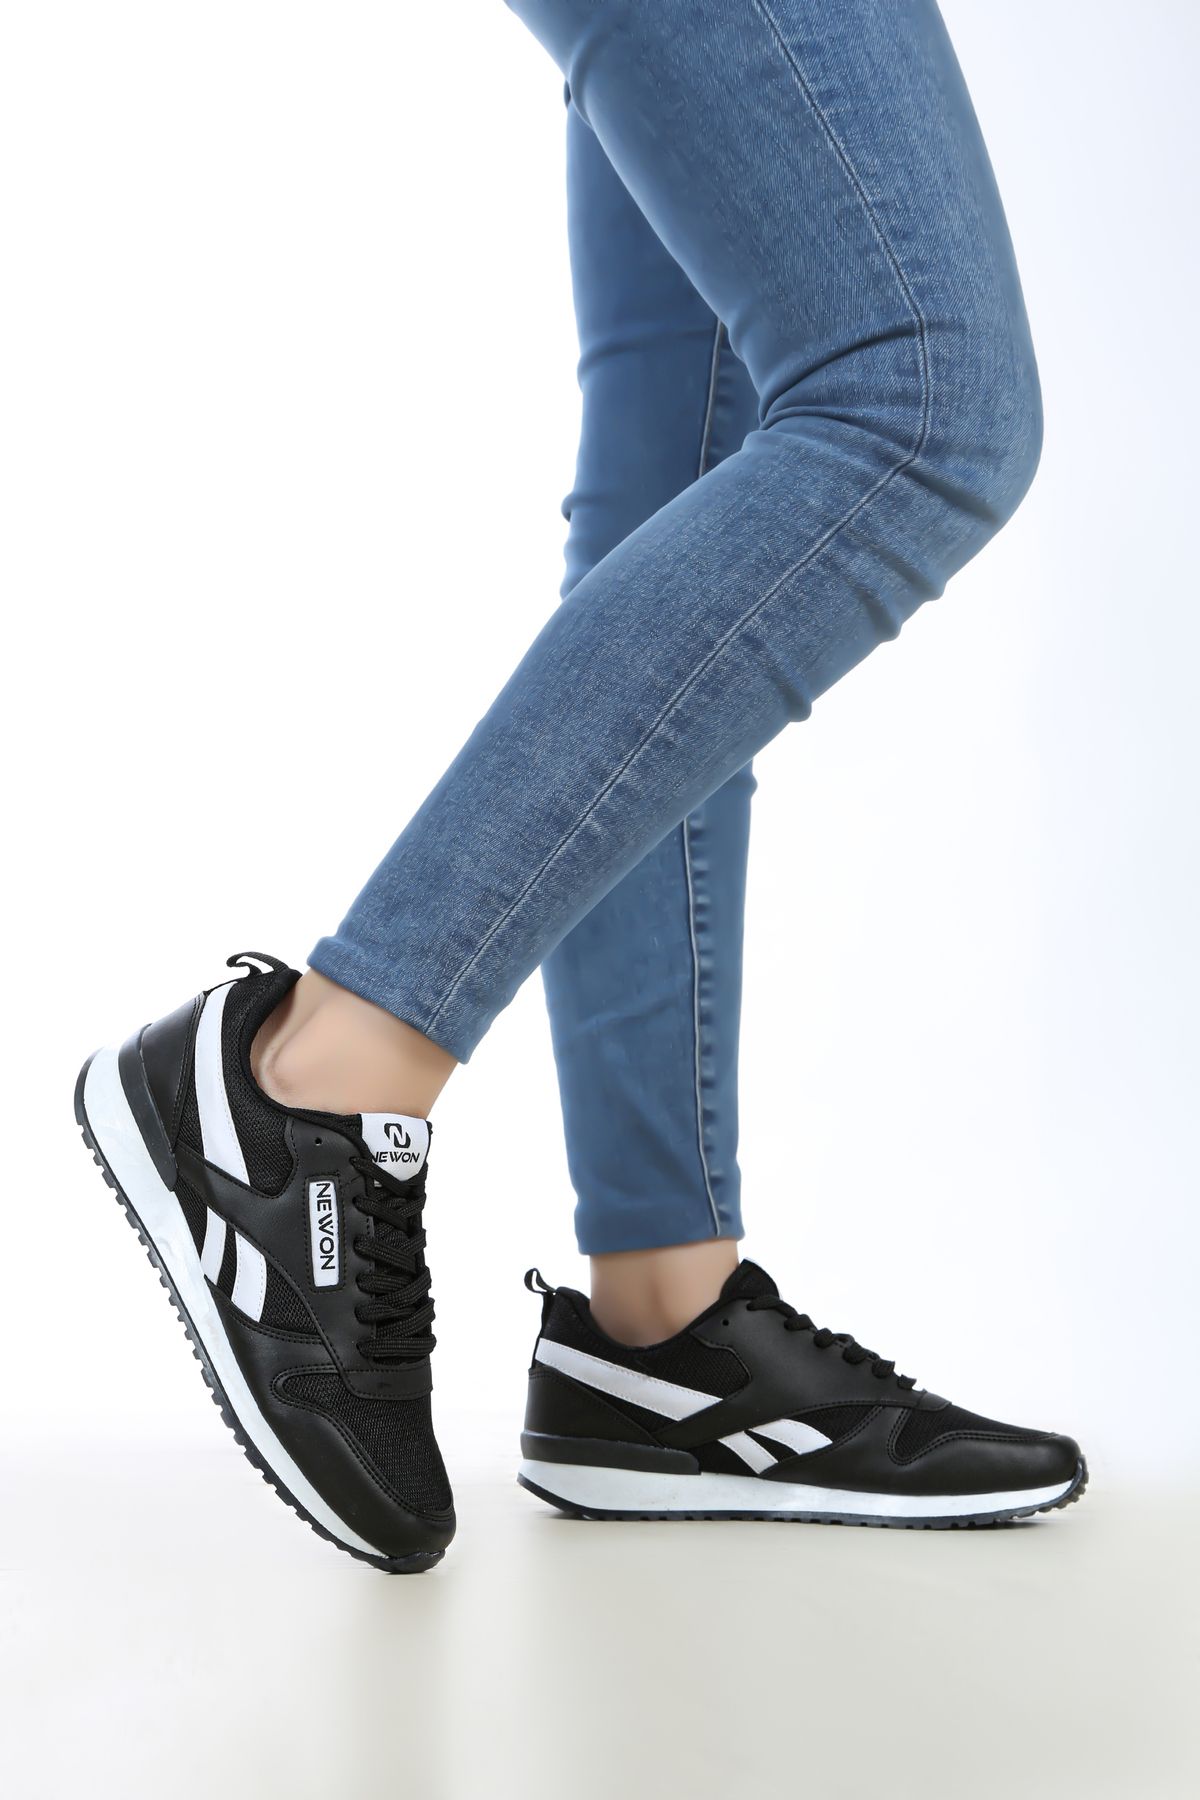 Newon Unisex Bağcıklı Günlük Rahat Taban Şık Tasarım Yürüyüş Casual Sneaker Spor Ayakkabı